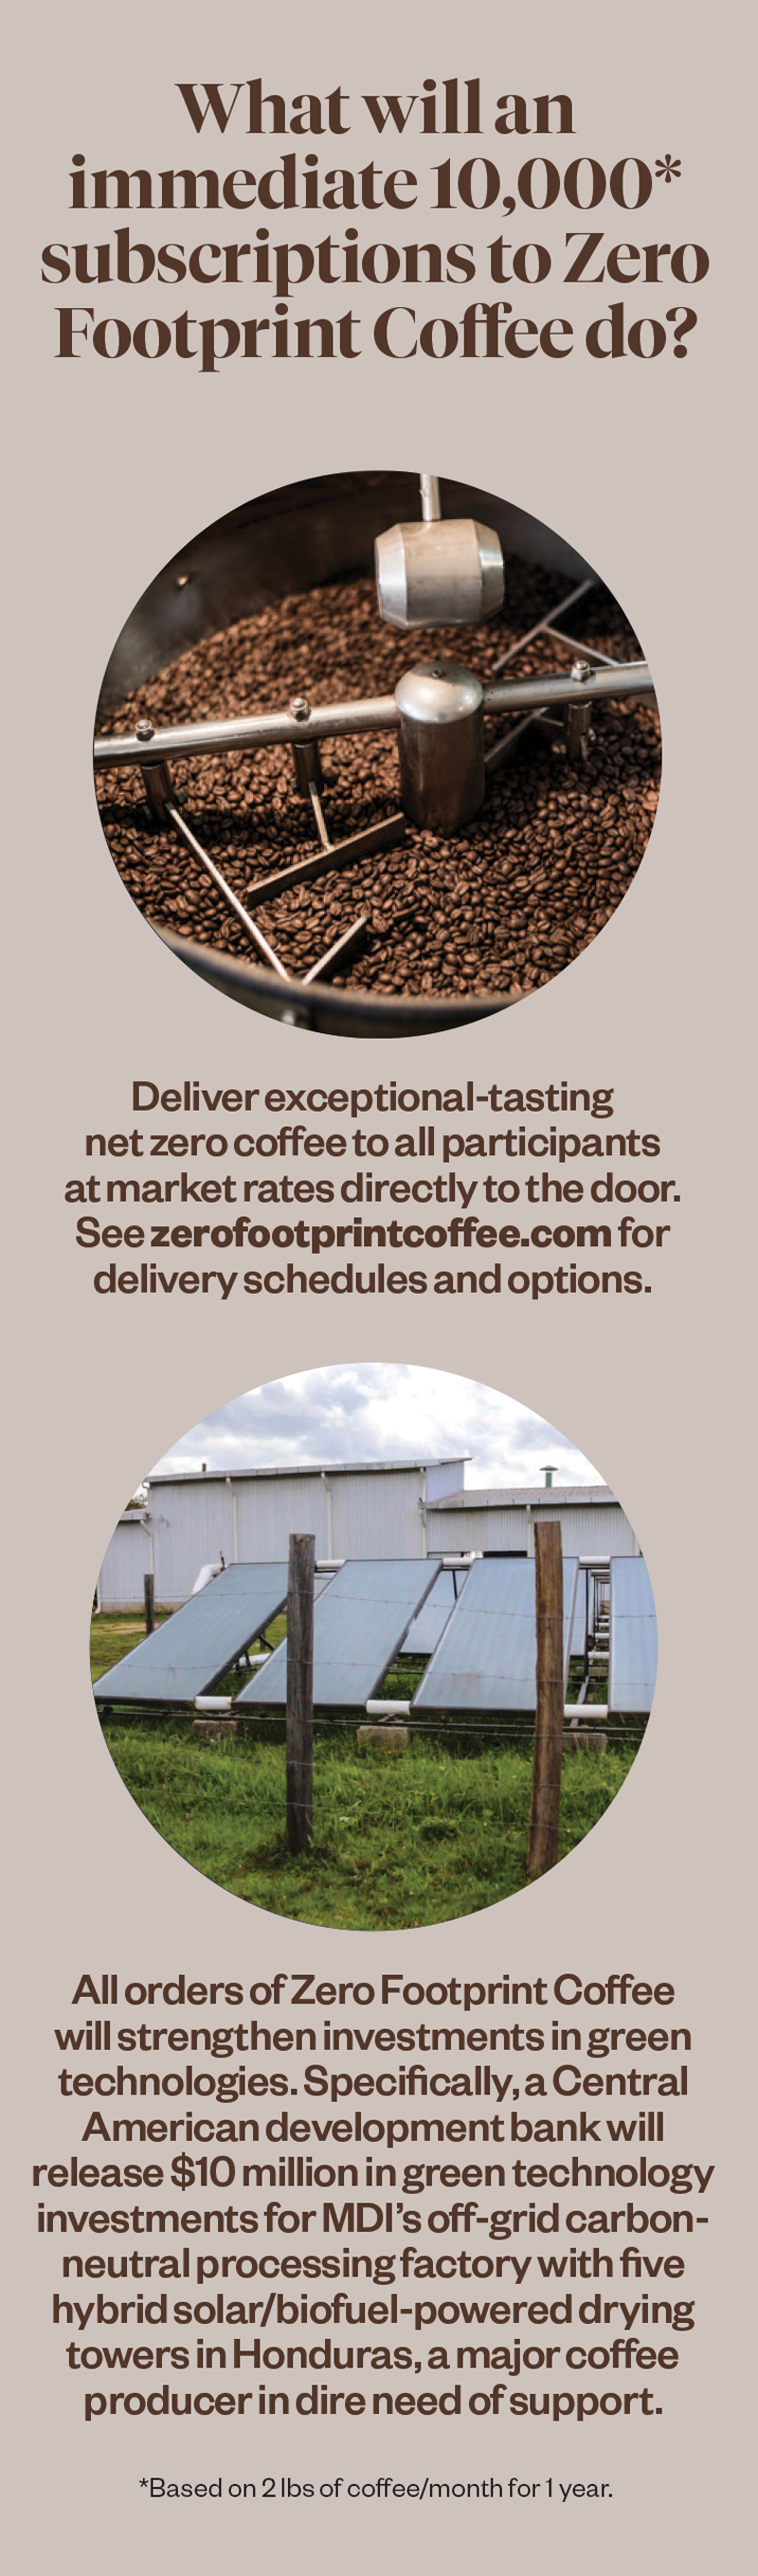 zero footprint coffee infographic